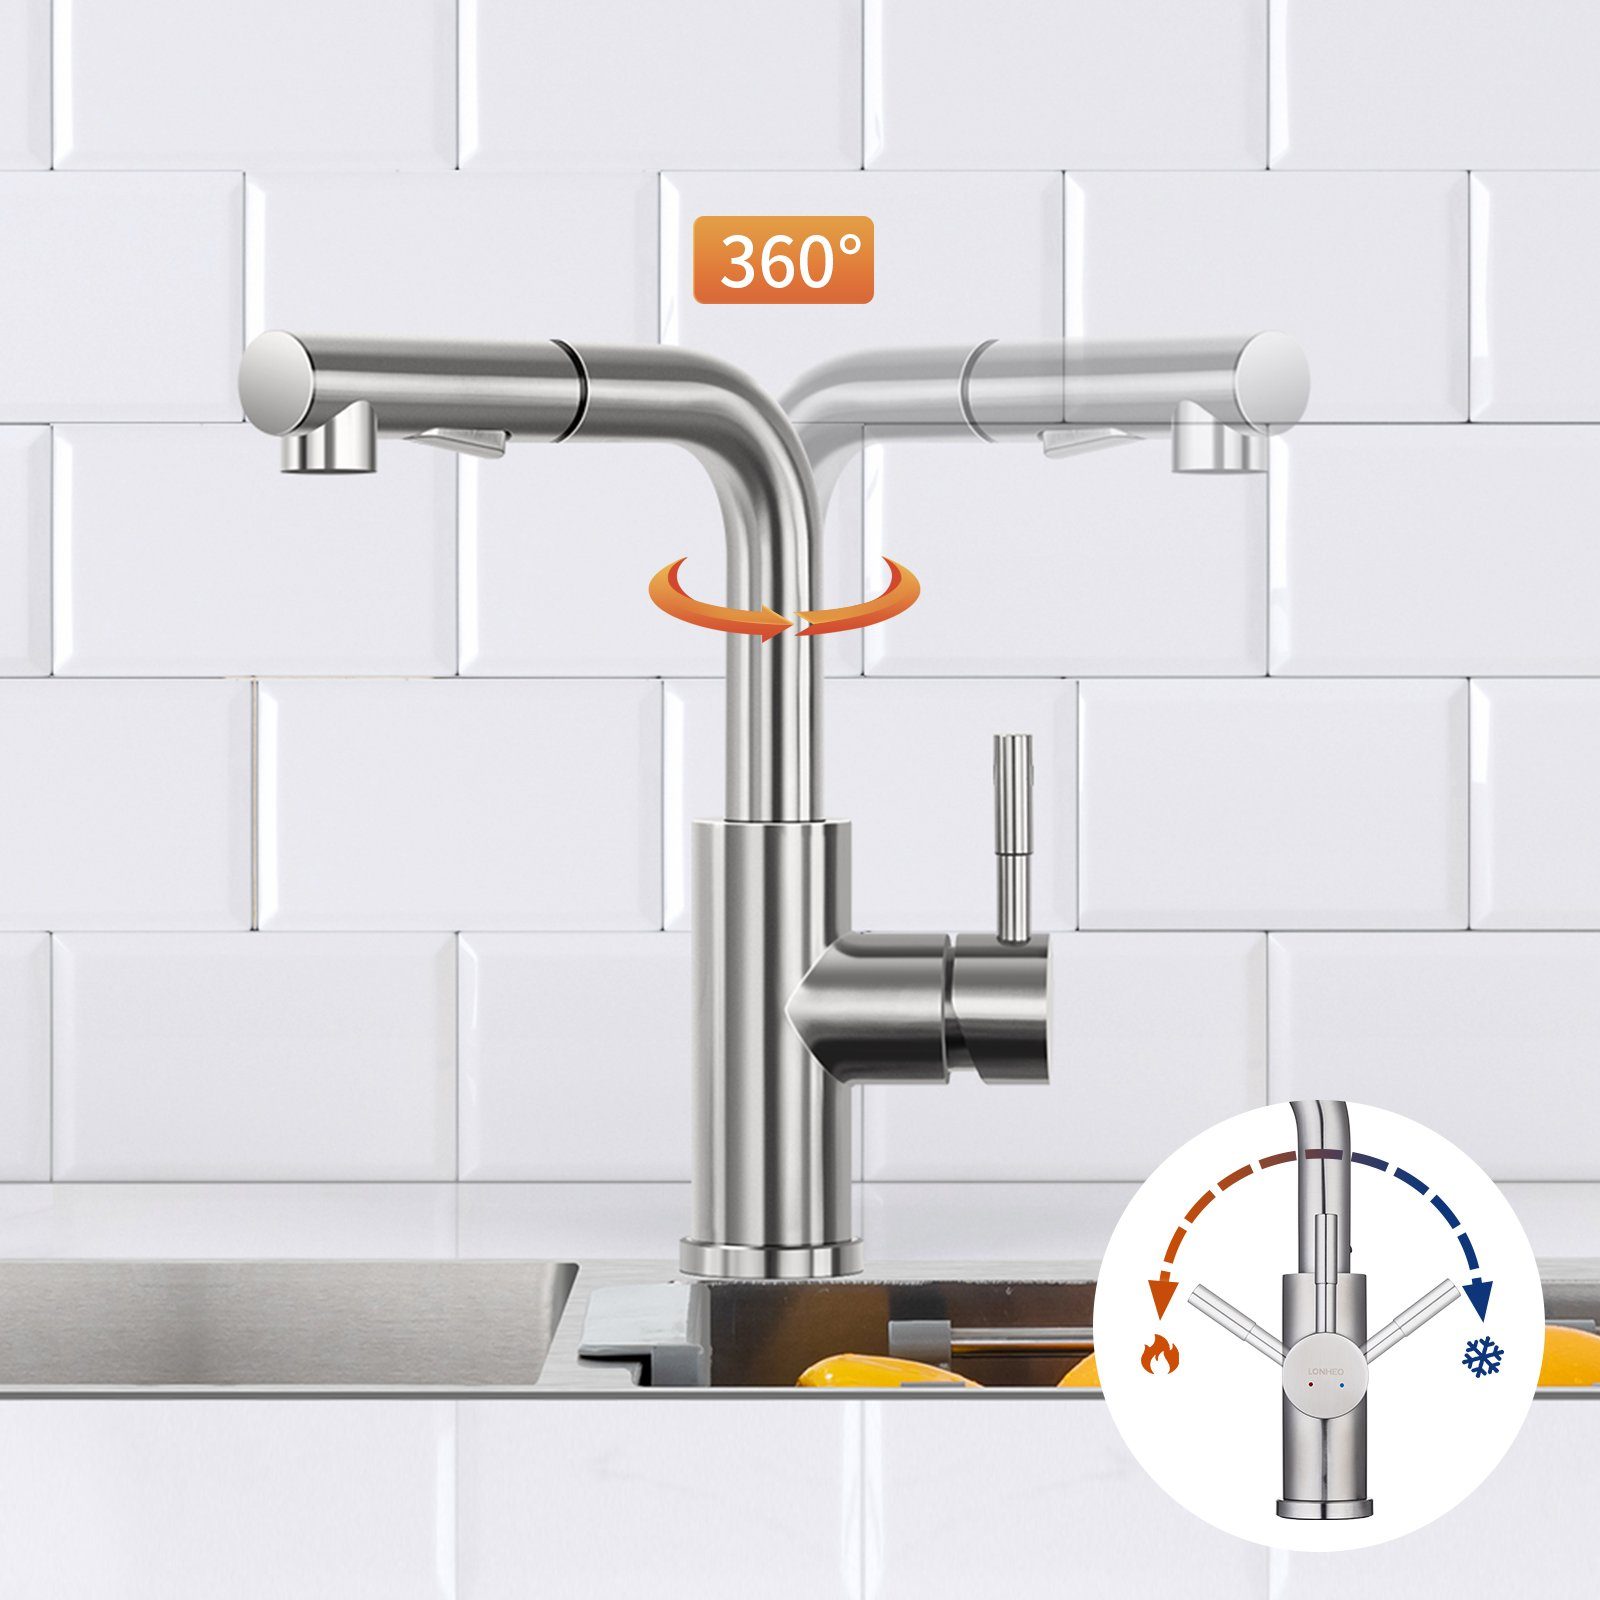 Lonheo Küchenarmatur 360° Drehbar Ausziehbar Edelstahl Strahlarten mit Wasserhahn Brause 2 Küchenarmatur